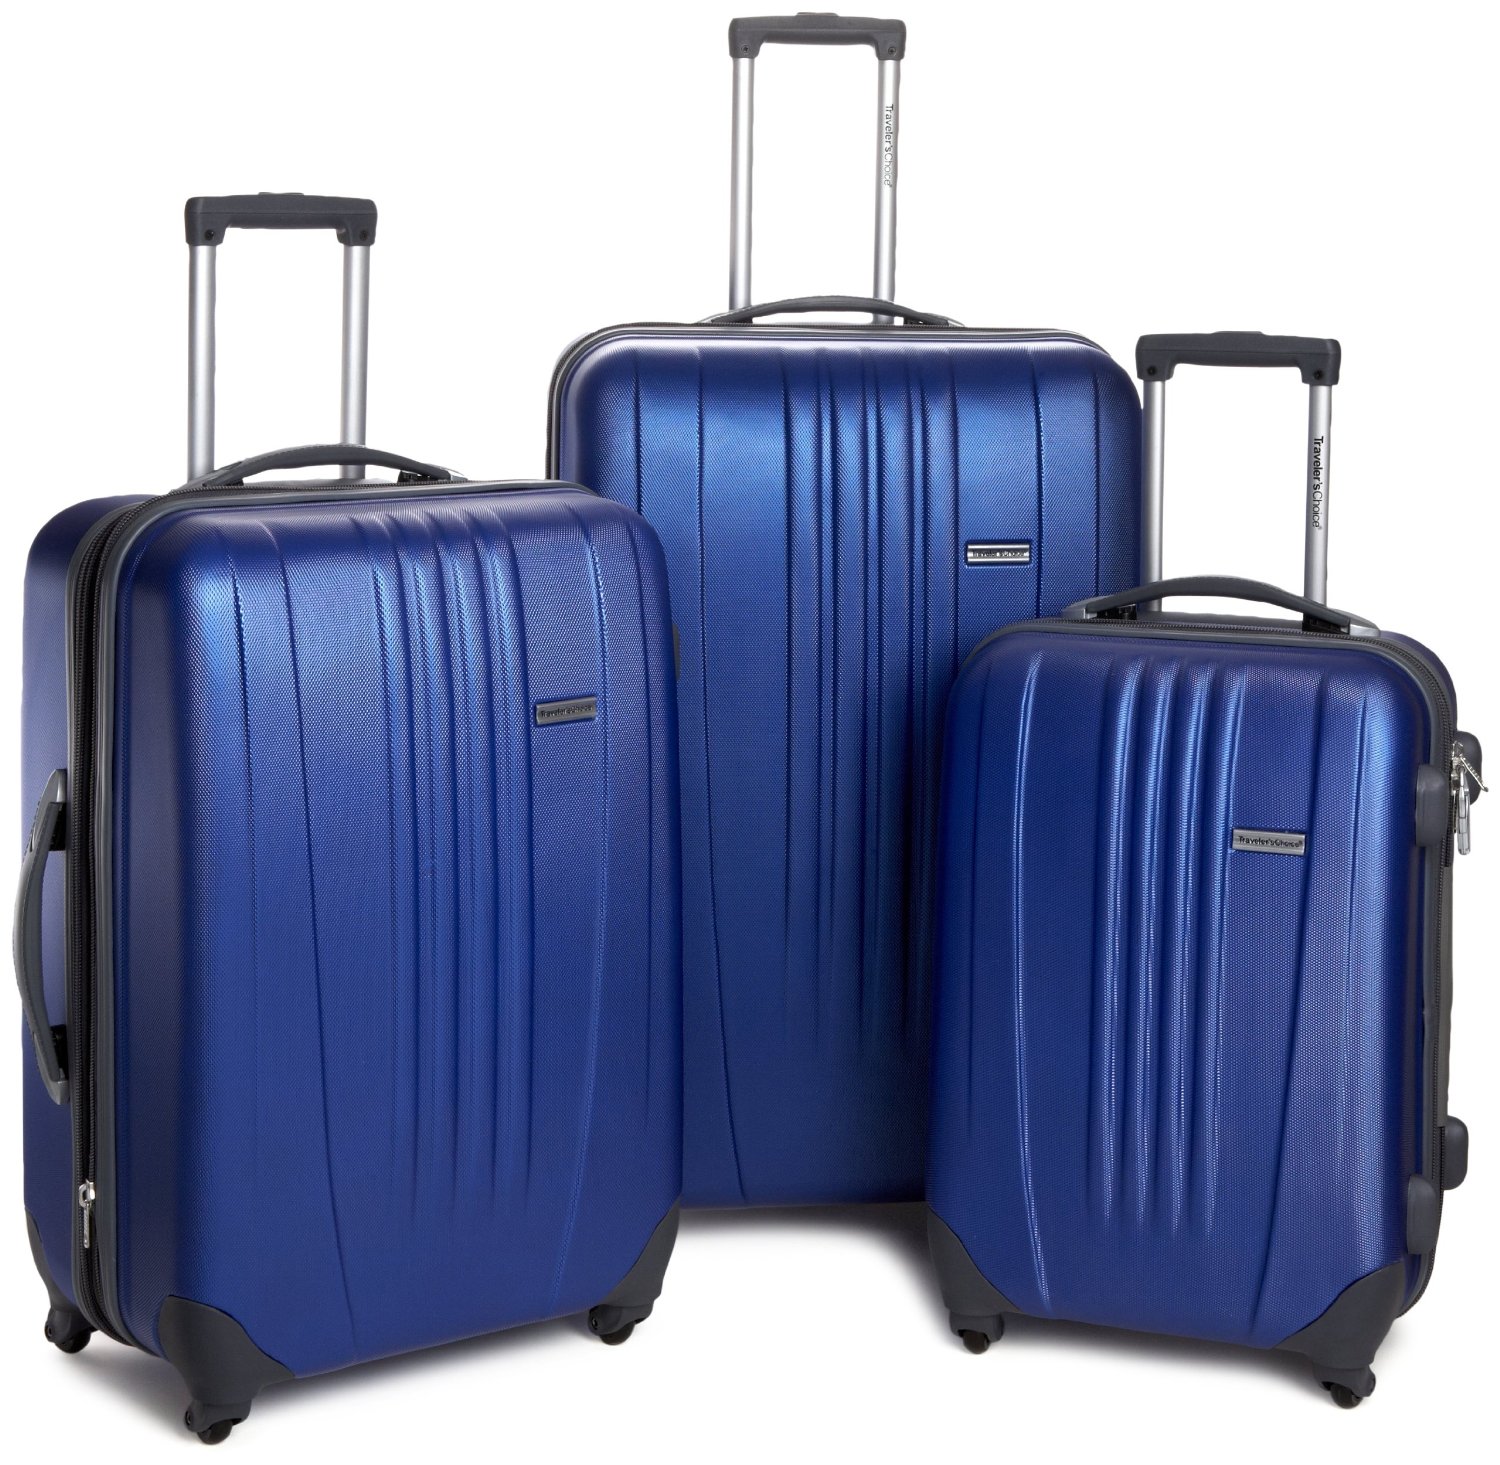 手快有！Travelers Choice Luggage Toronto 硬壳拉杆箱3件套 $86.39免运费